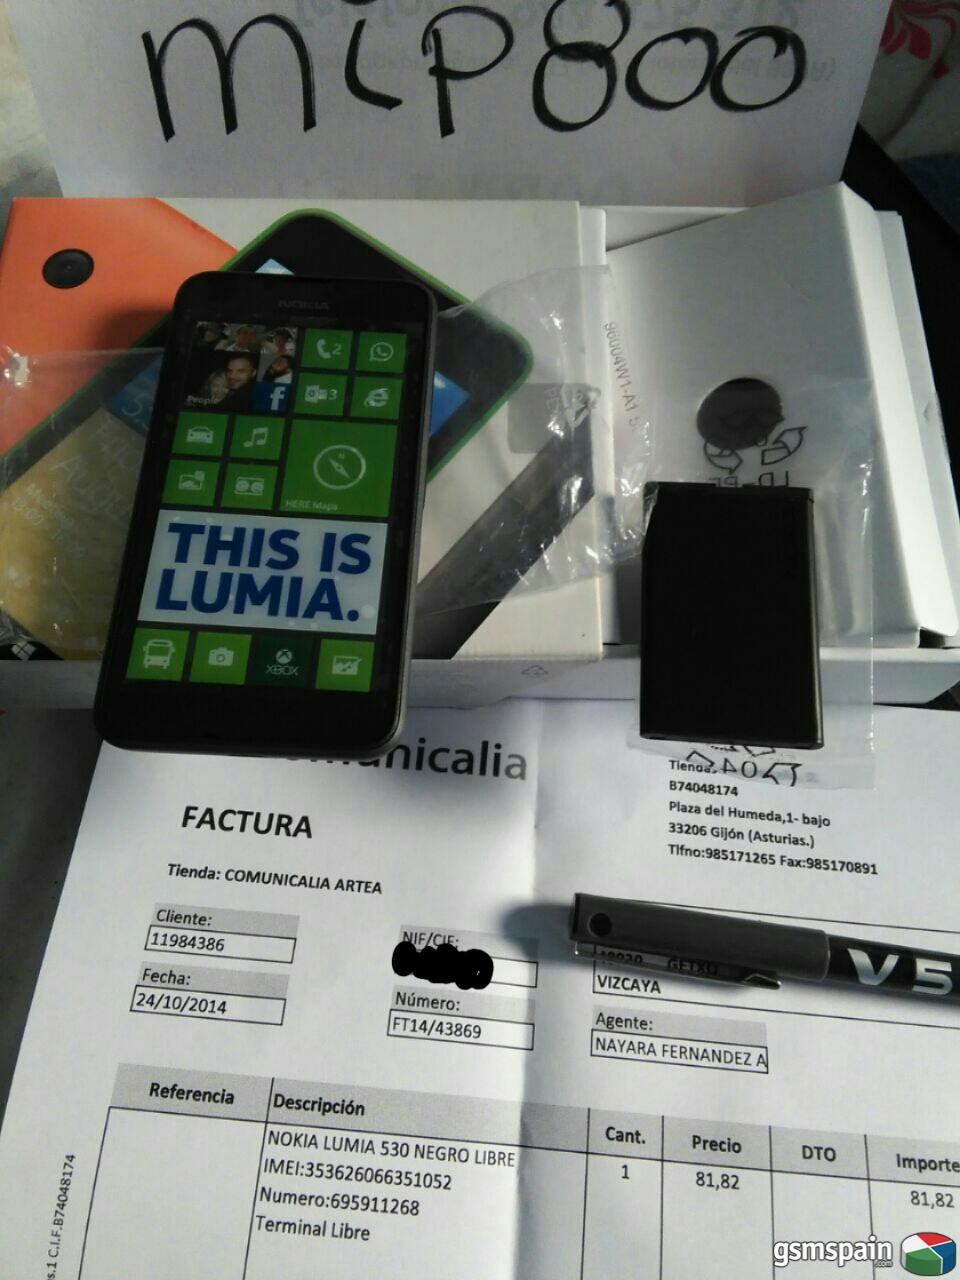 [VENDO] Nokia Lumia 530 libre negro nuevo sin uso con factura